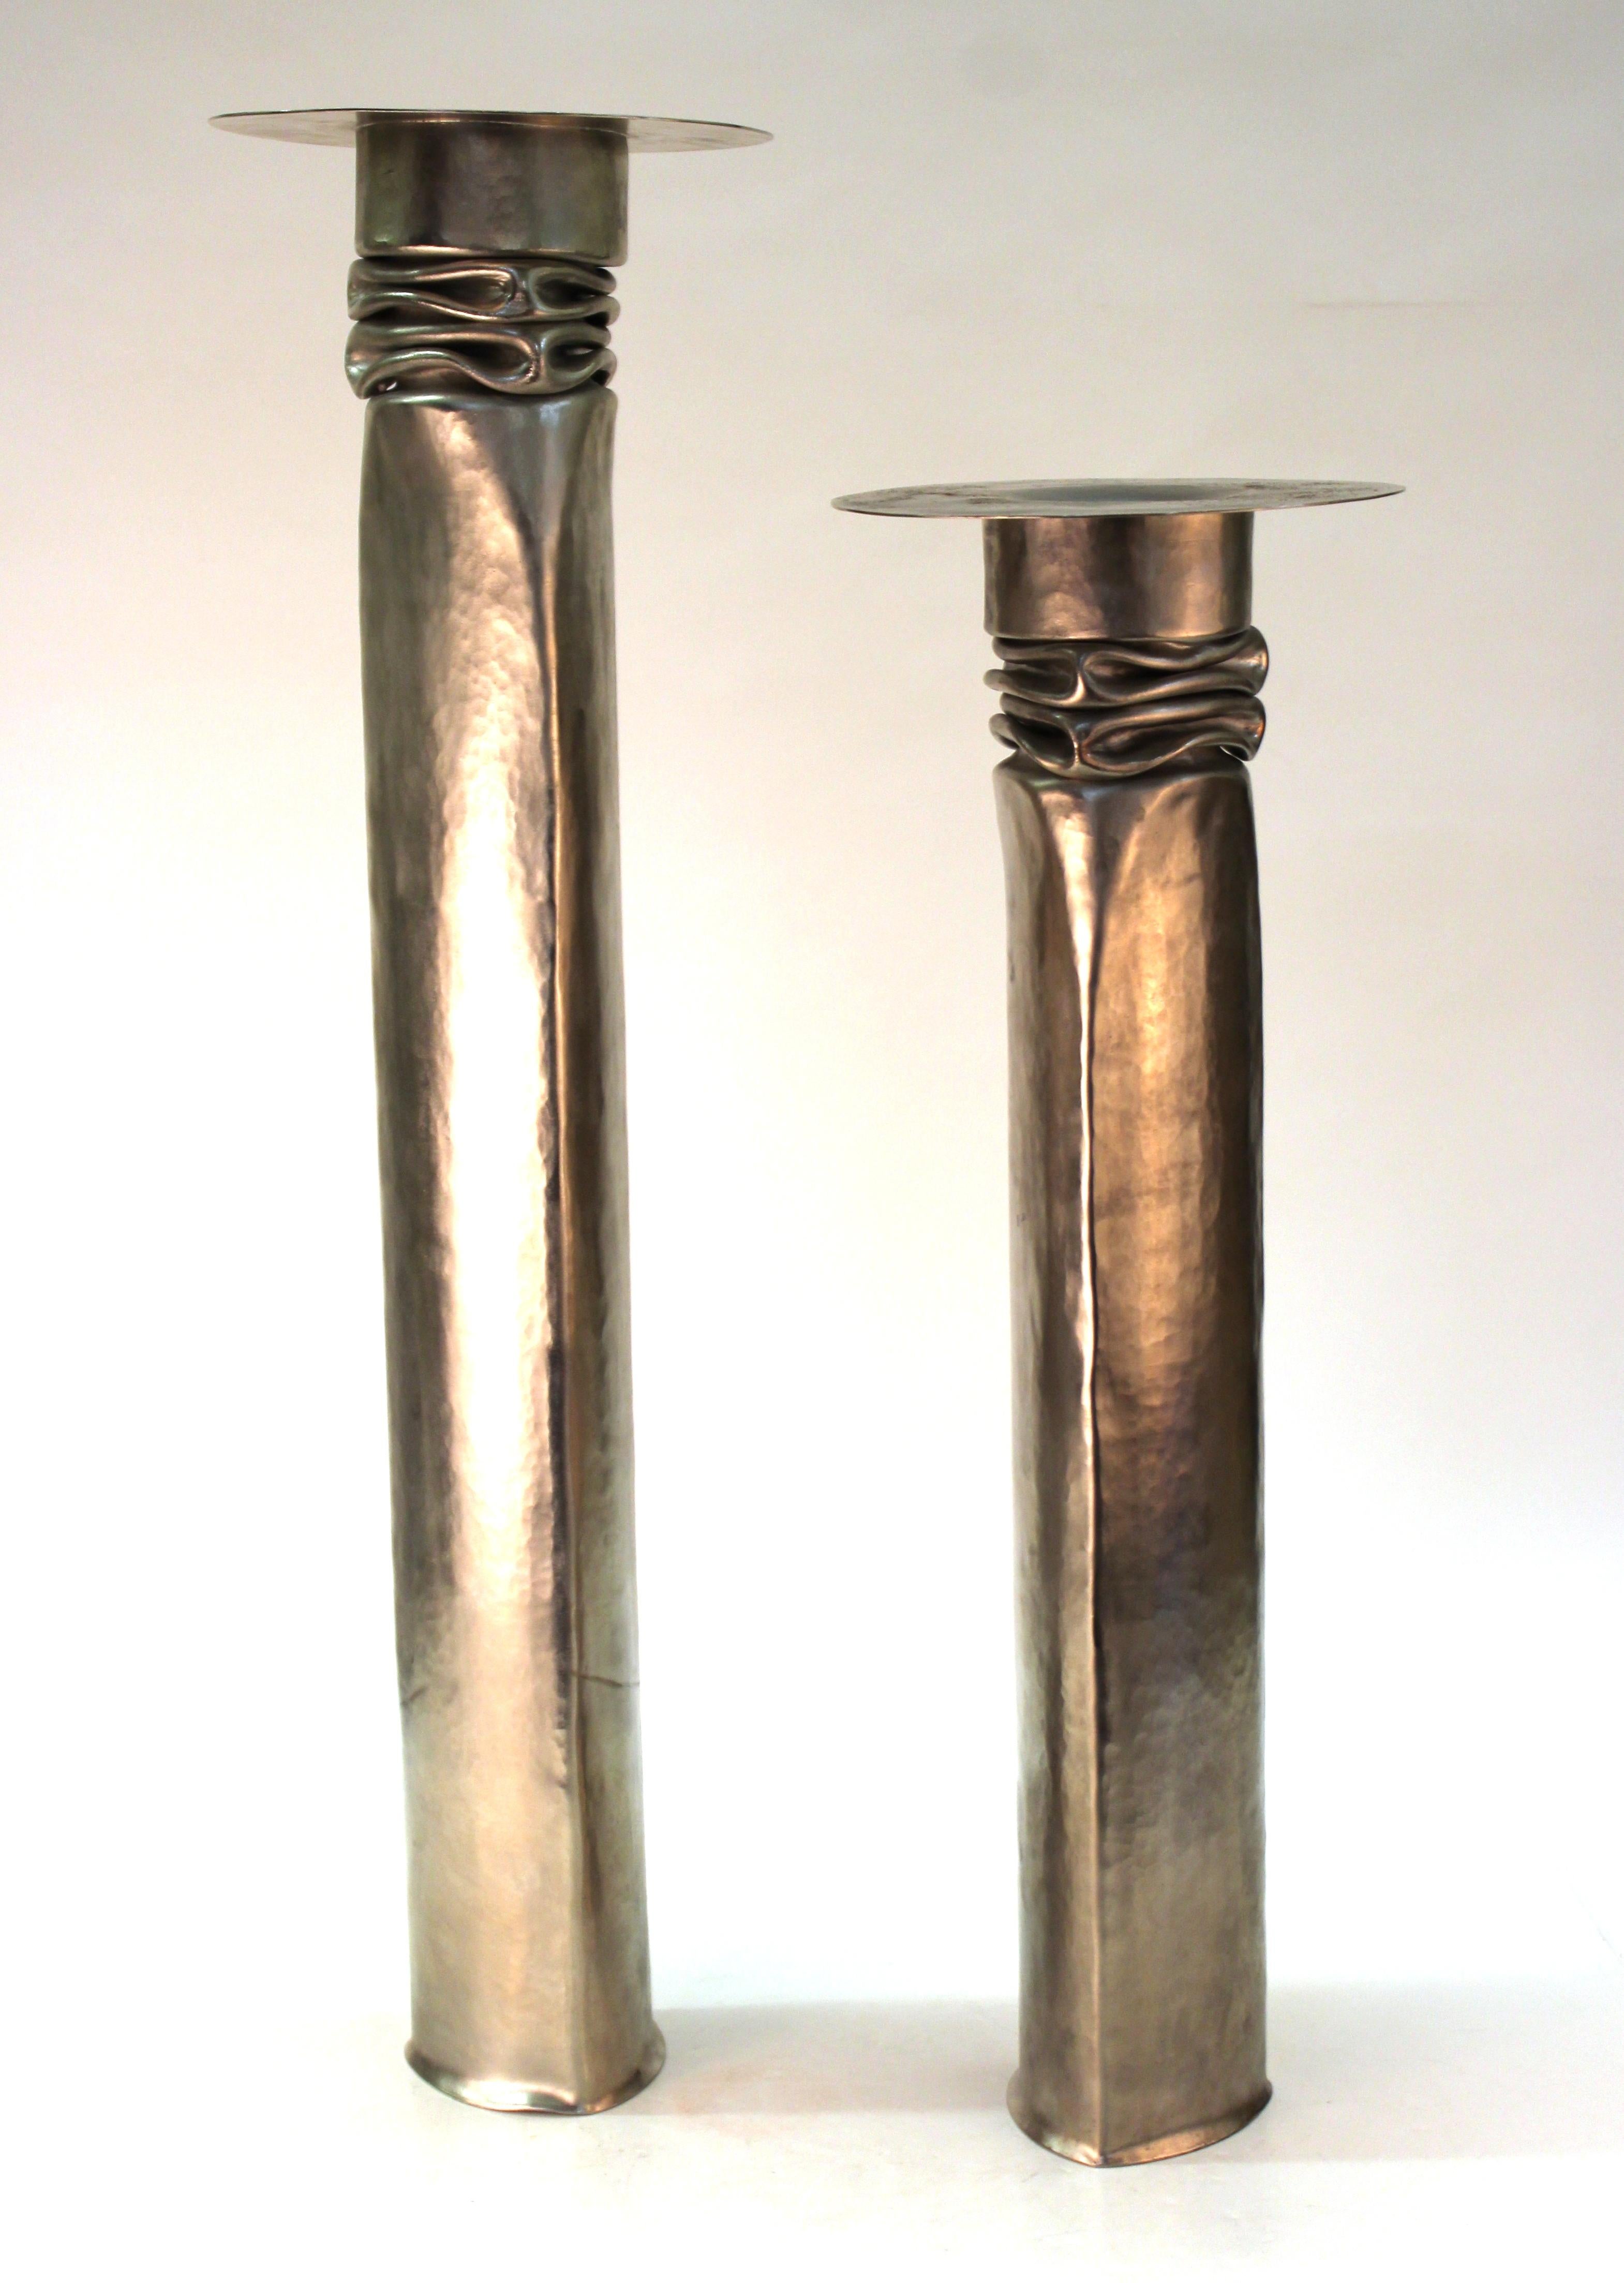 Zwei handgefertigte Metallkerzenhalter aus vernickeltem Kupfer, die der berühmte Metallschmied Thomas Roy Markusen Ende der 1970er Jahre in den USA schuf. Das Paar hat Herstellermarken auf der Unterseite und ist in einem bemerkenswerten